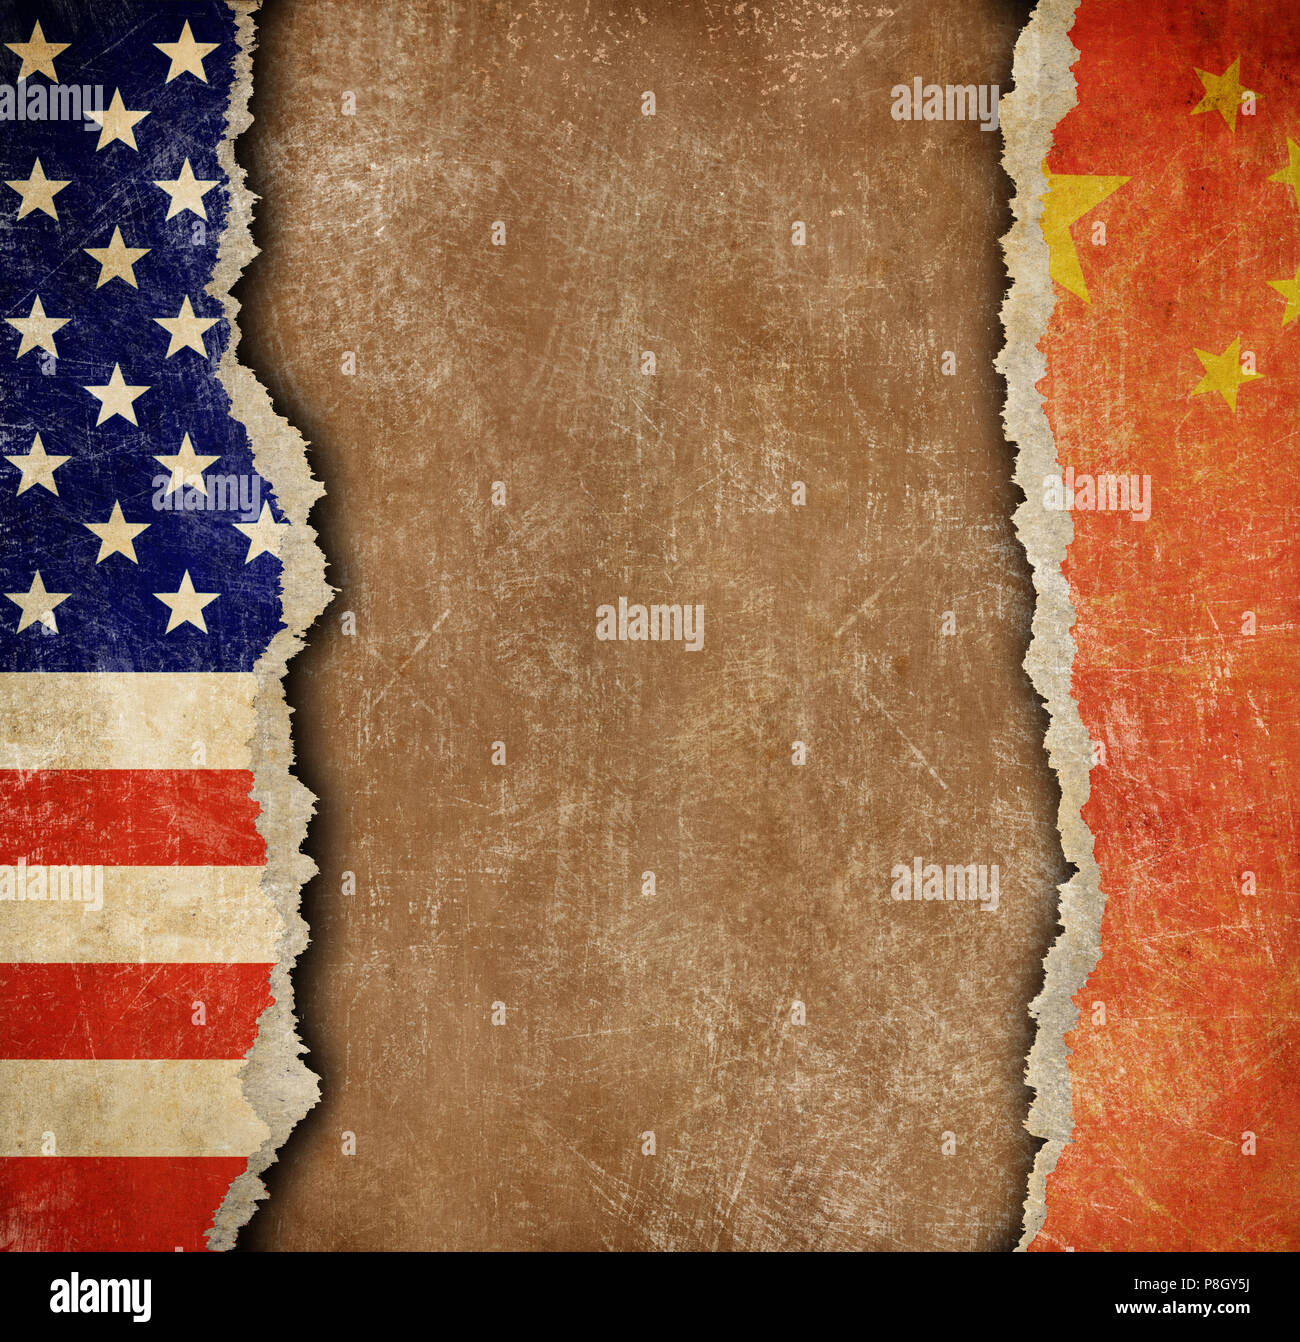 Handelskrieg zwischen den USA und China Konzept Stockfoto